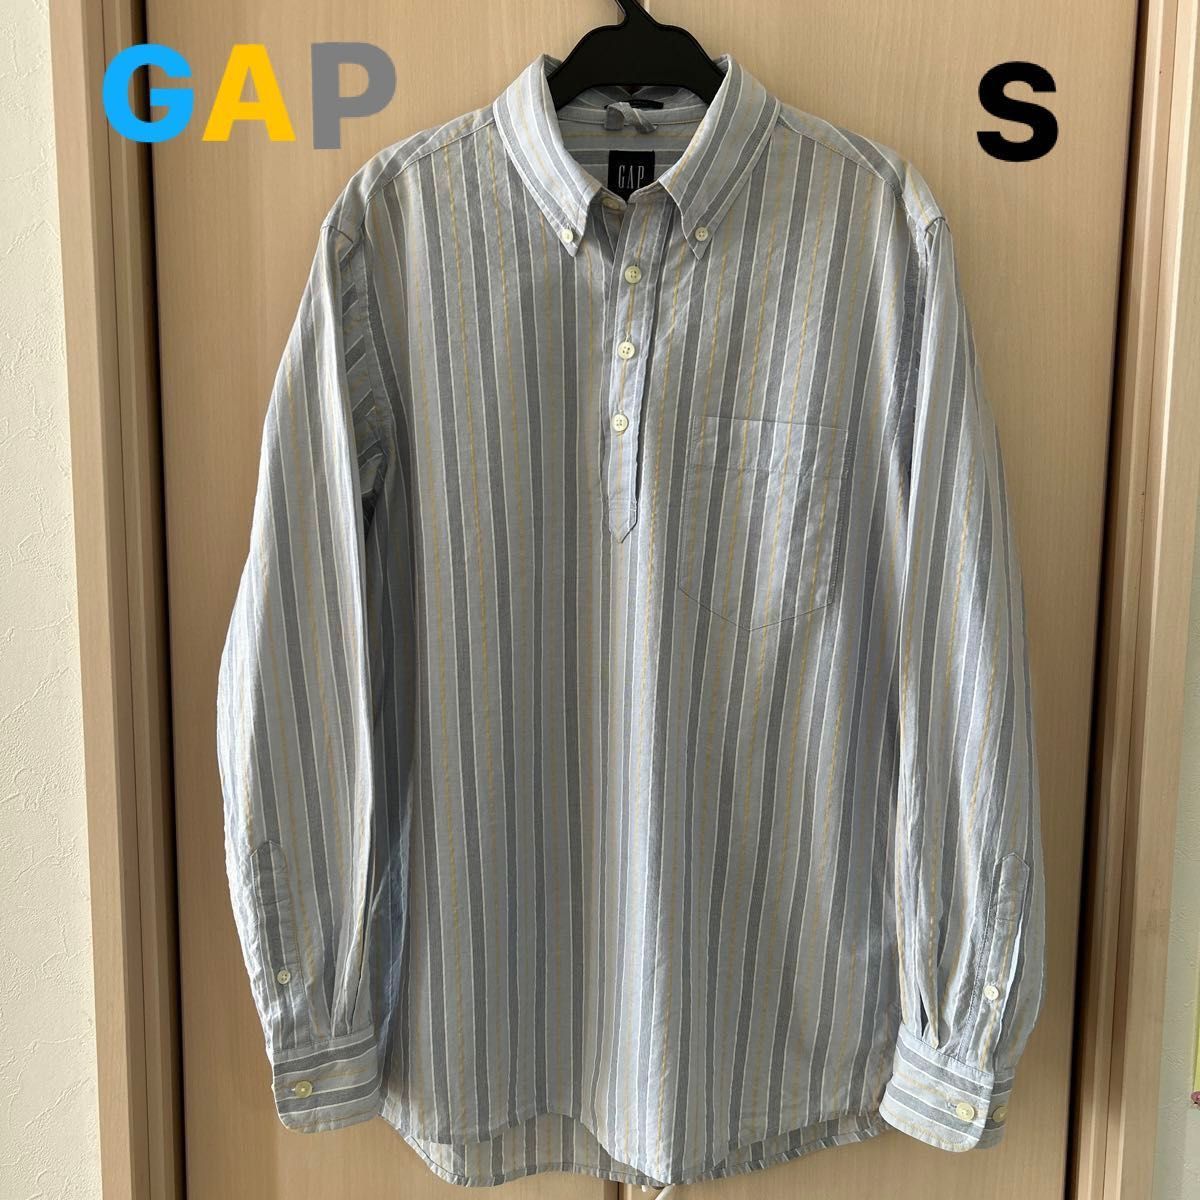 【GAP】(USED) メンズ ストライプ プルオーバー 長袖シャツ ボタンダウンシャツ Sサイズ